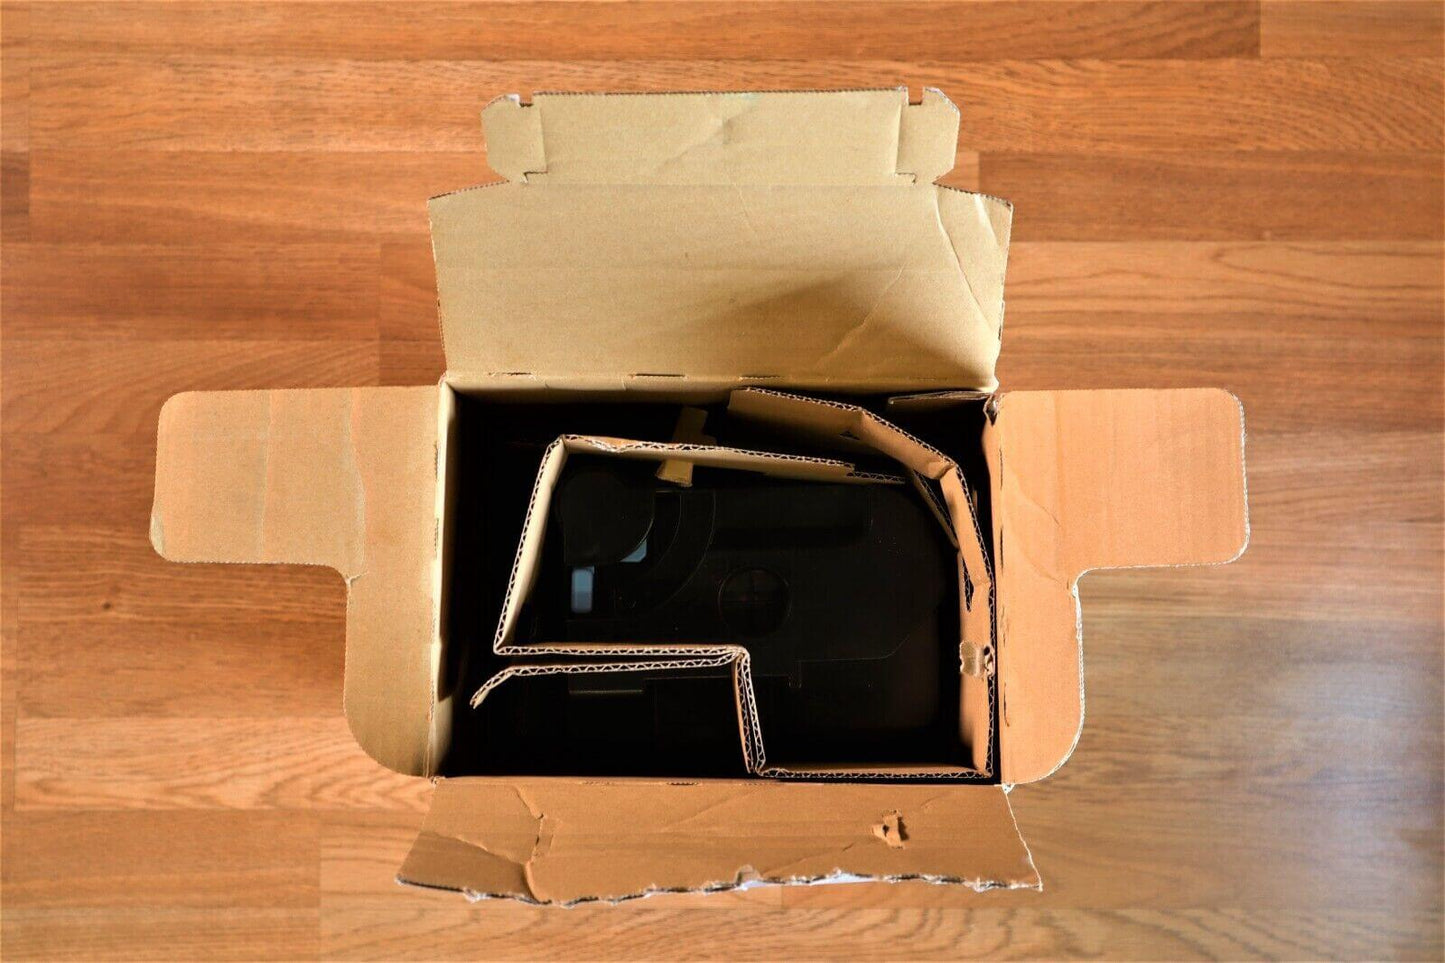 Open Box Kyocera TK-6727 Toner Black TASKalfa7002i 7003i 8002i 8003i 9002i 9003i - copier-clearance-center